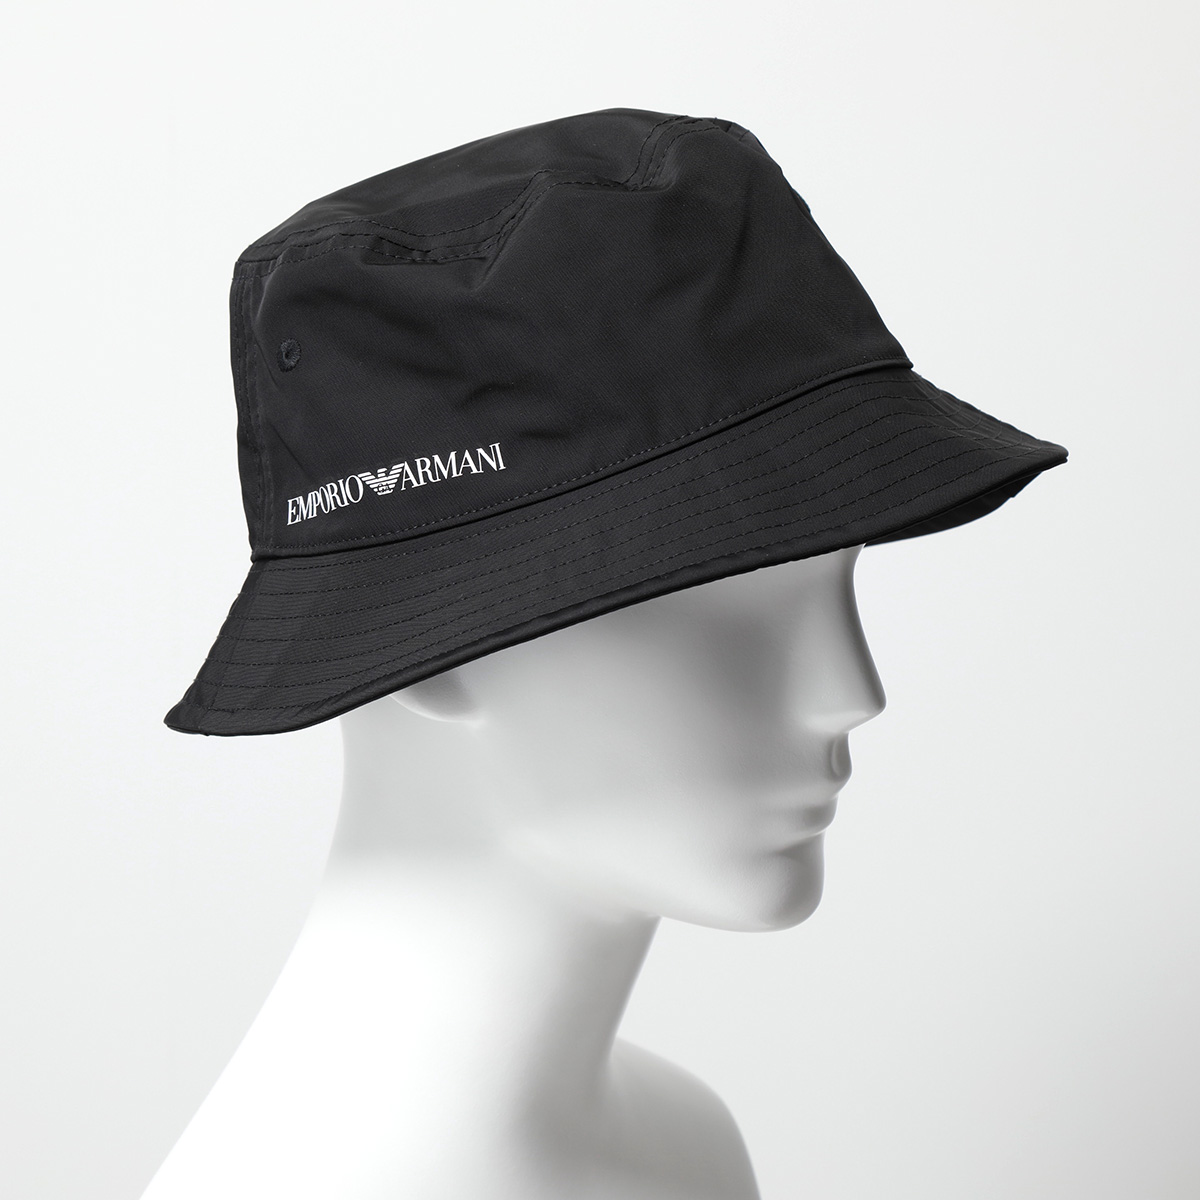 EMPORIO ARMANI エンポリオアルマーニ バケットハット 627298 3R596 メンズ ロゴ 帽子  00020/BLACK【cp_ten】 インポートセレクト musee